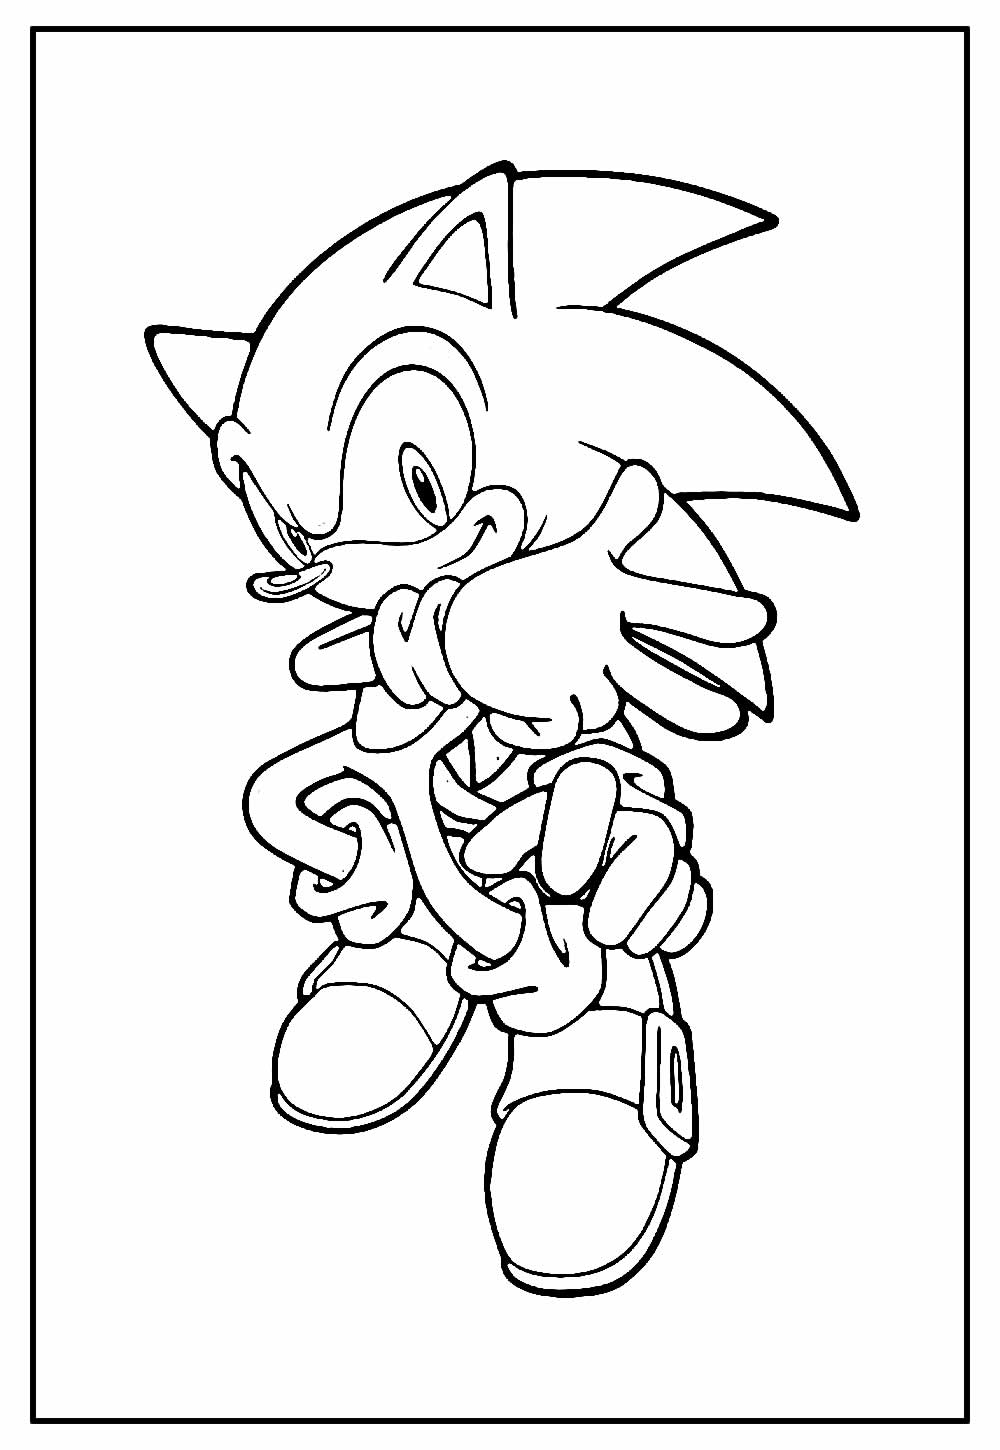 Desenhos de Sonic Malvado para Colorir e Imprimir 